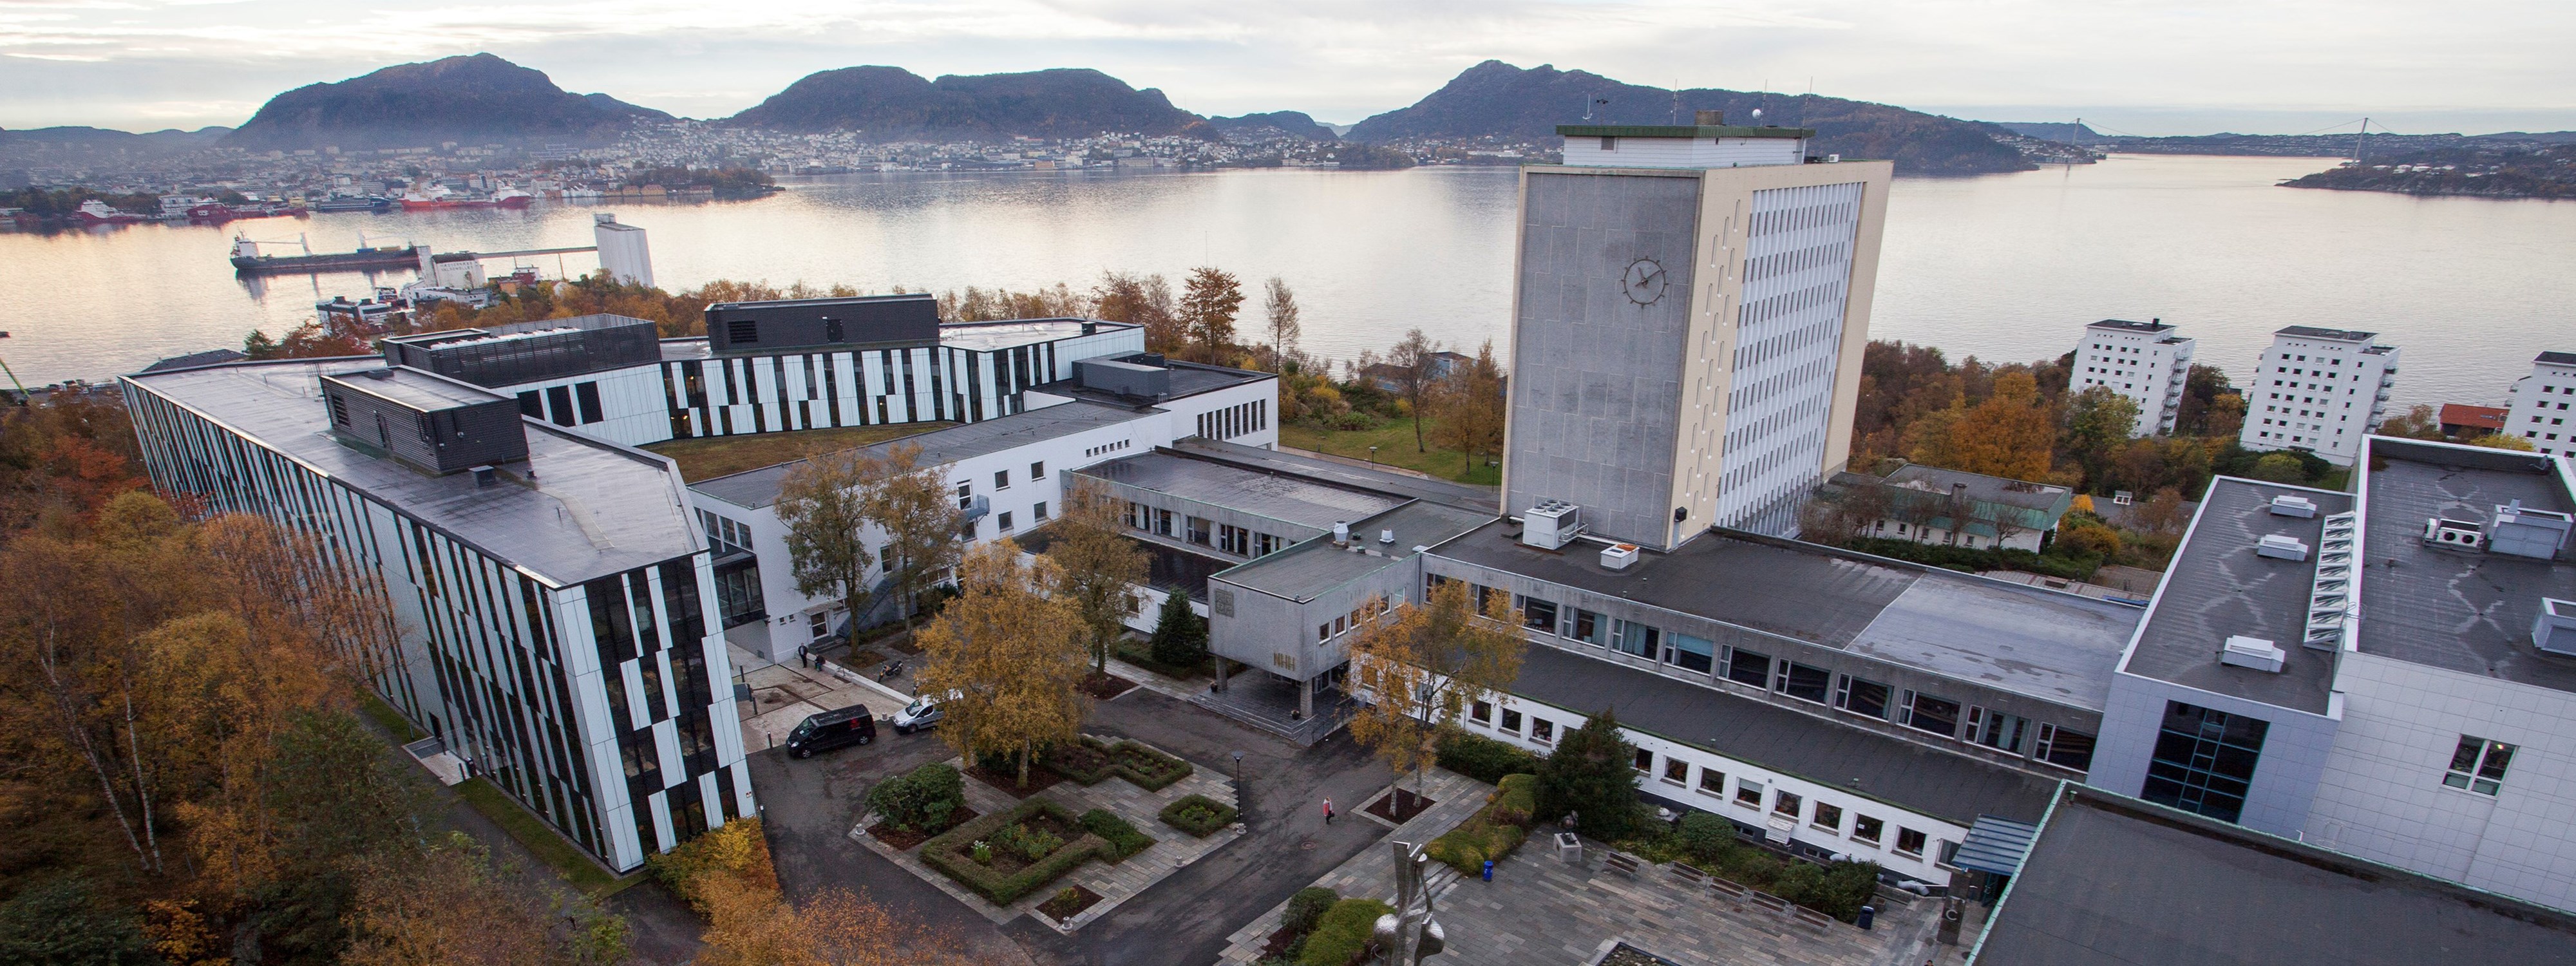 The Norwegian School of Economics